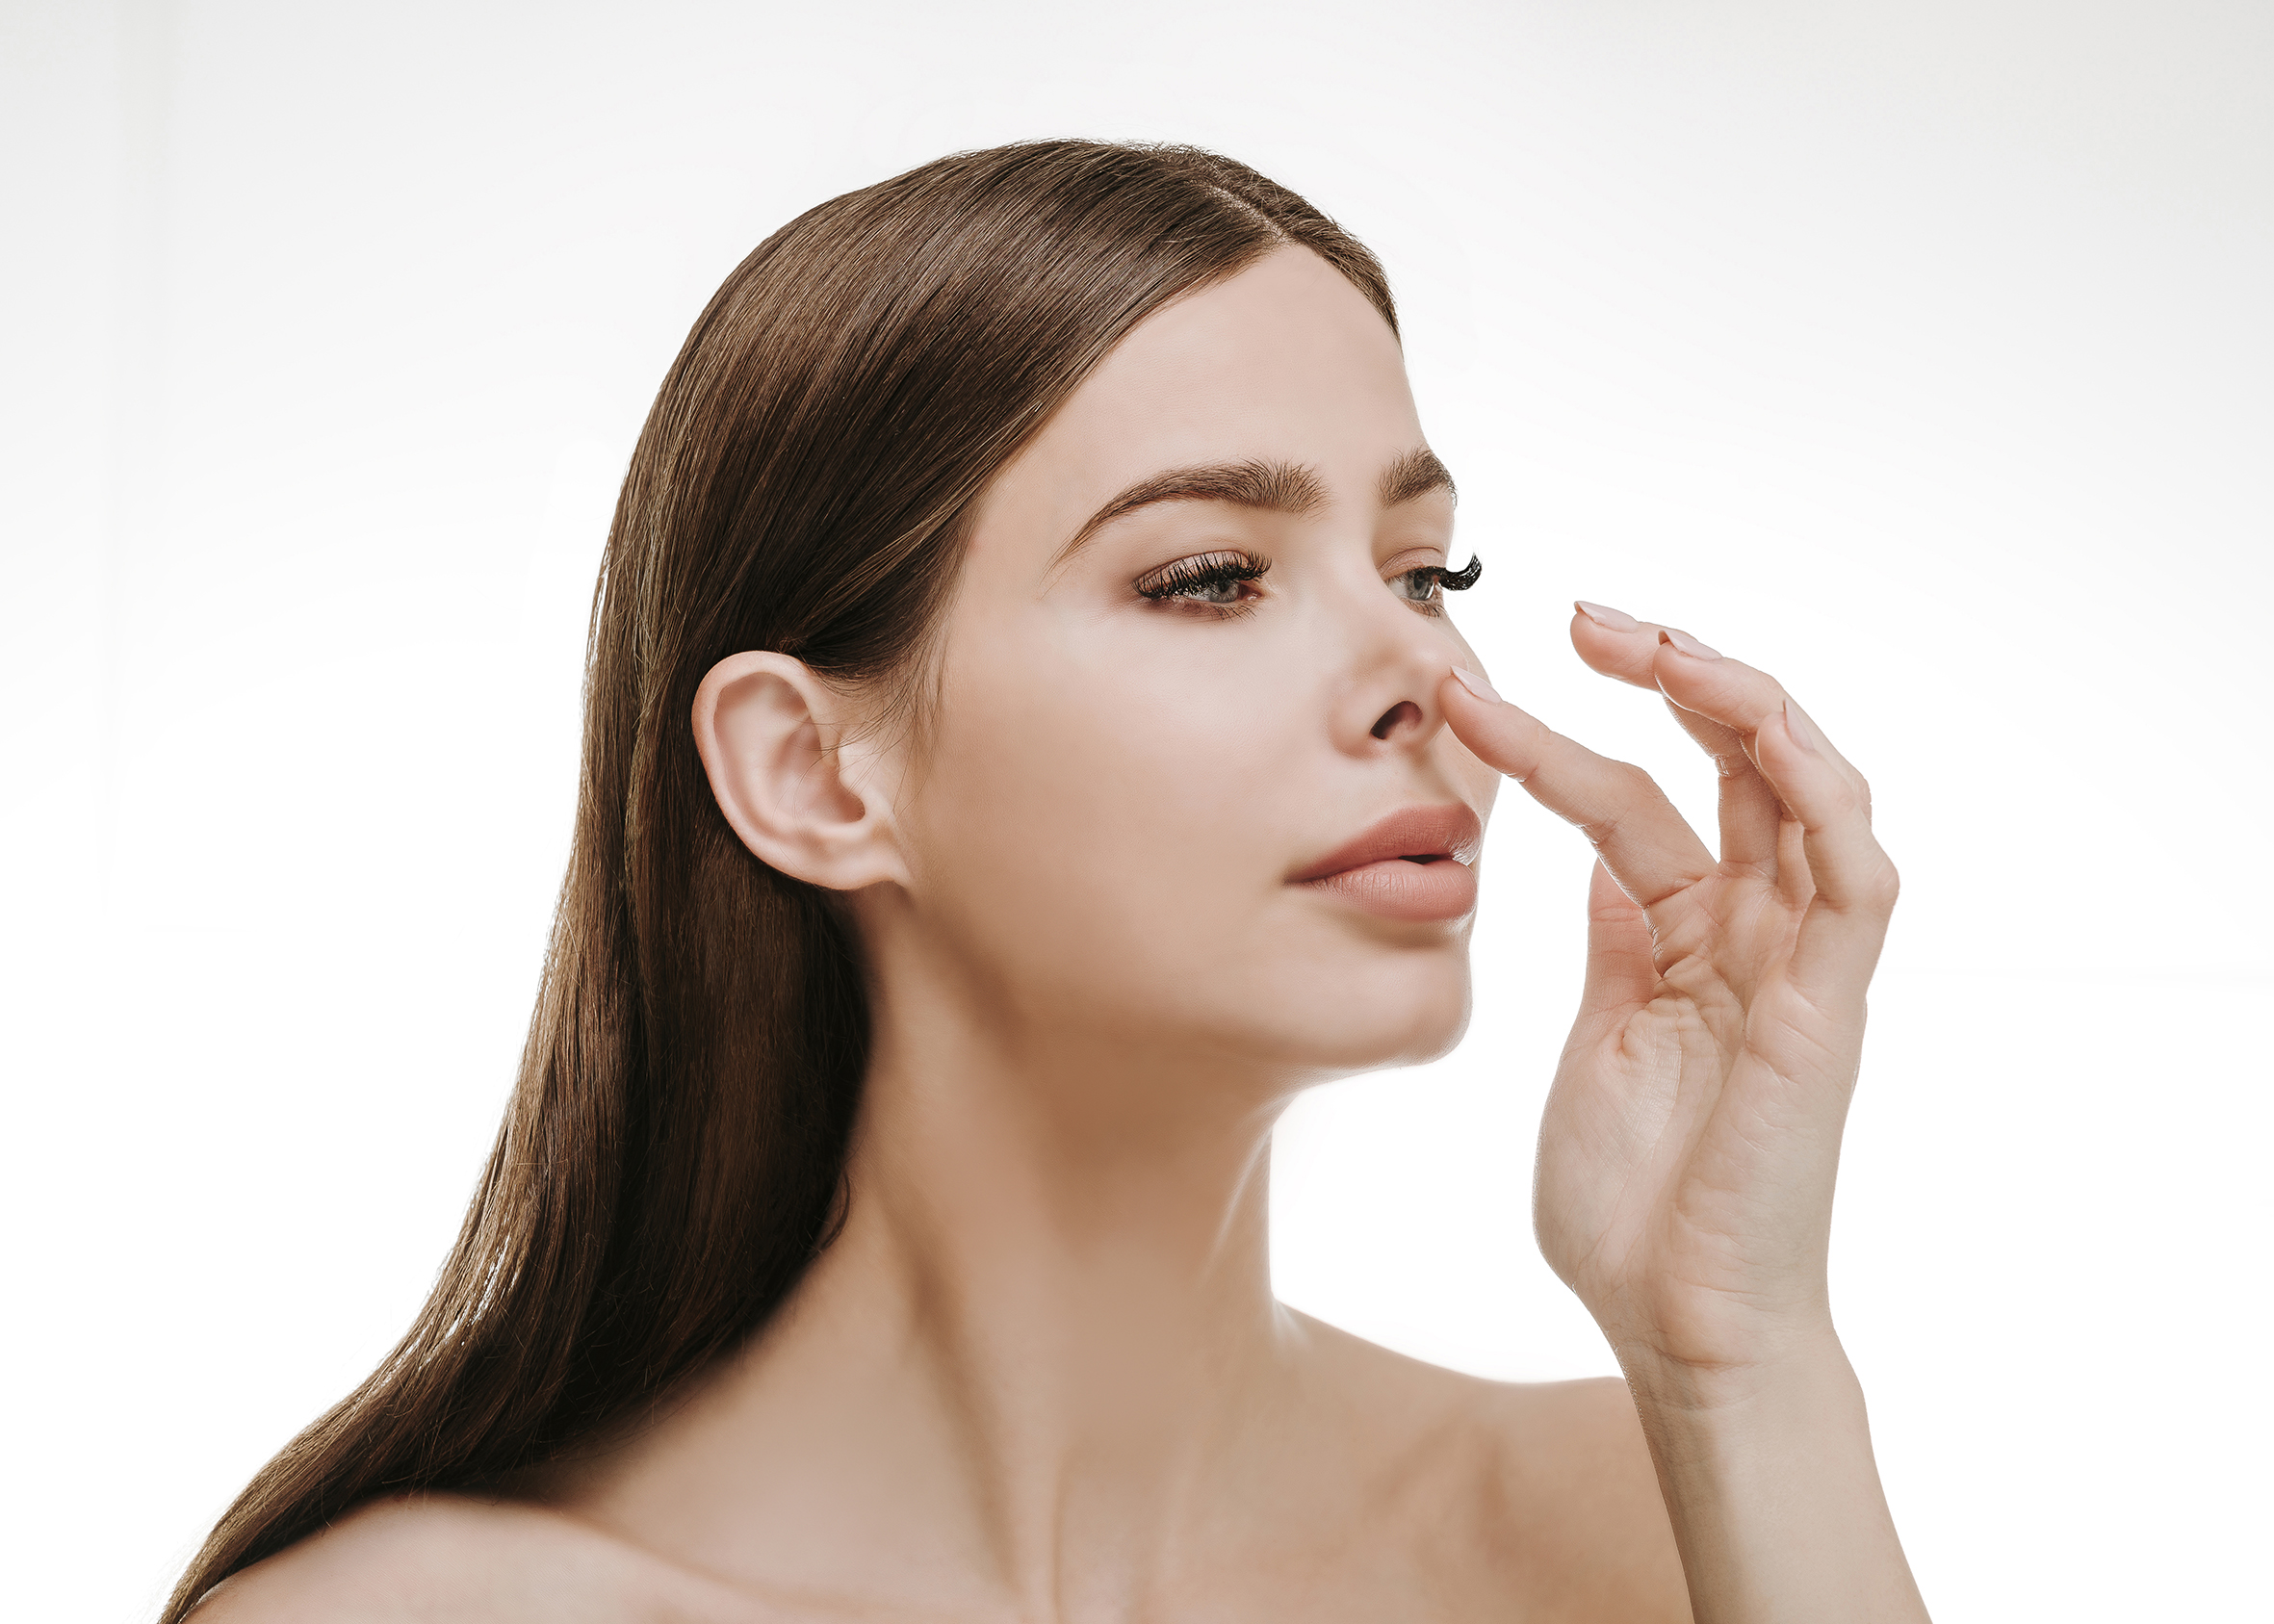 Plastyka nosa – całkowita korekcja nosa – rynoplastyka